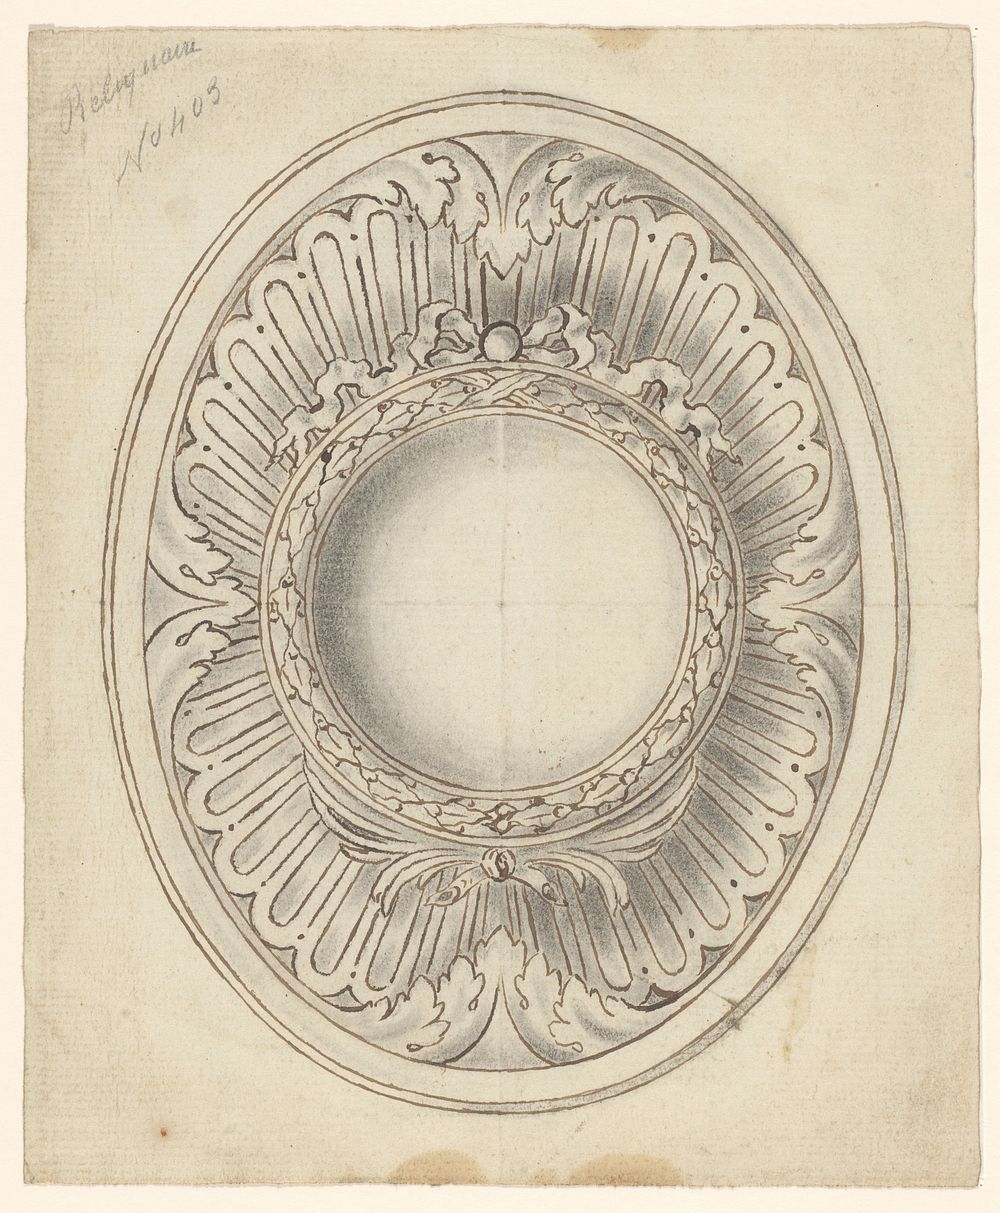 Ontwerp voor een ovale reliekhouder (c. 1770 - c. 1780) by anonymous